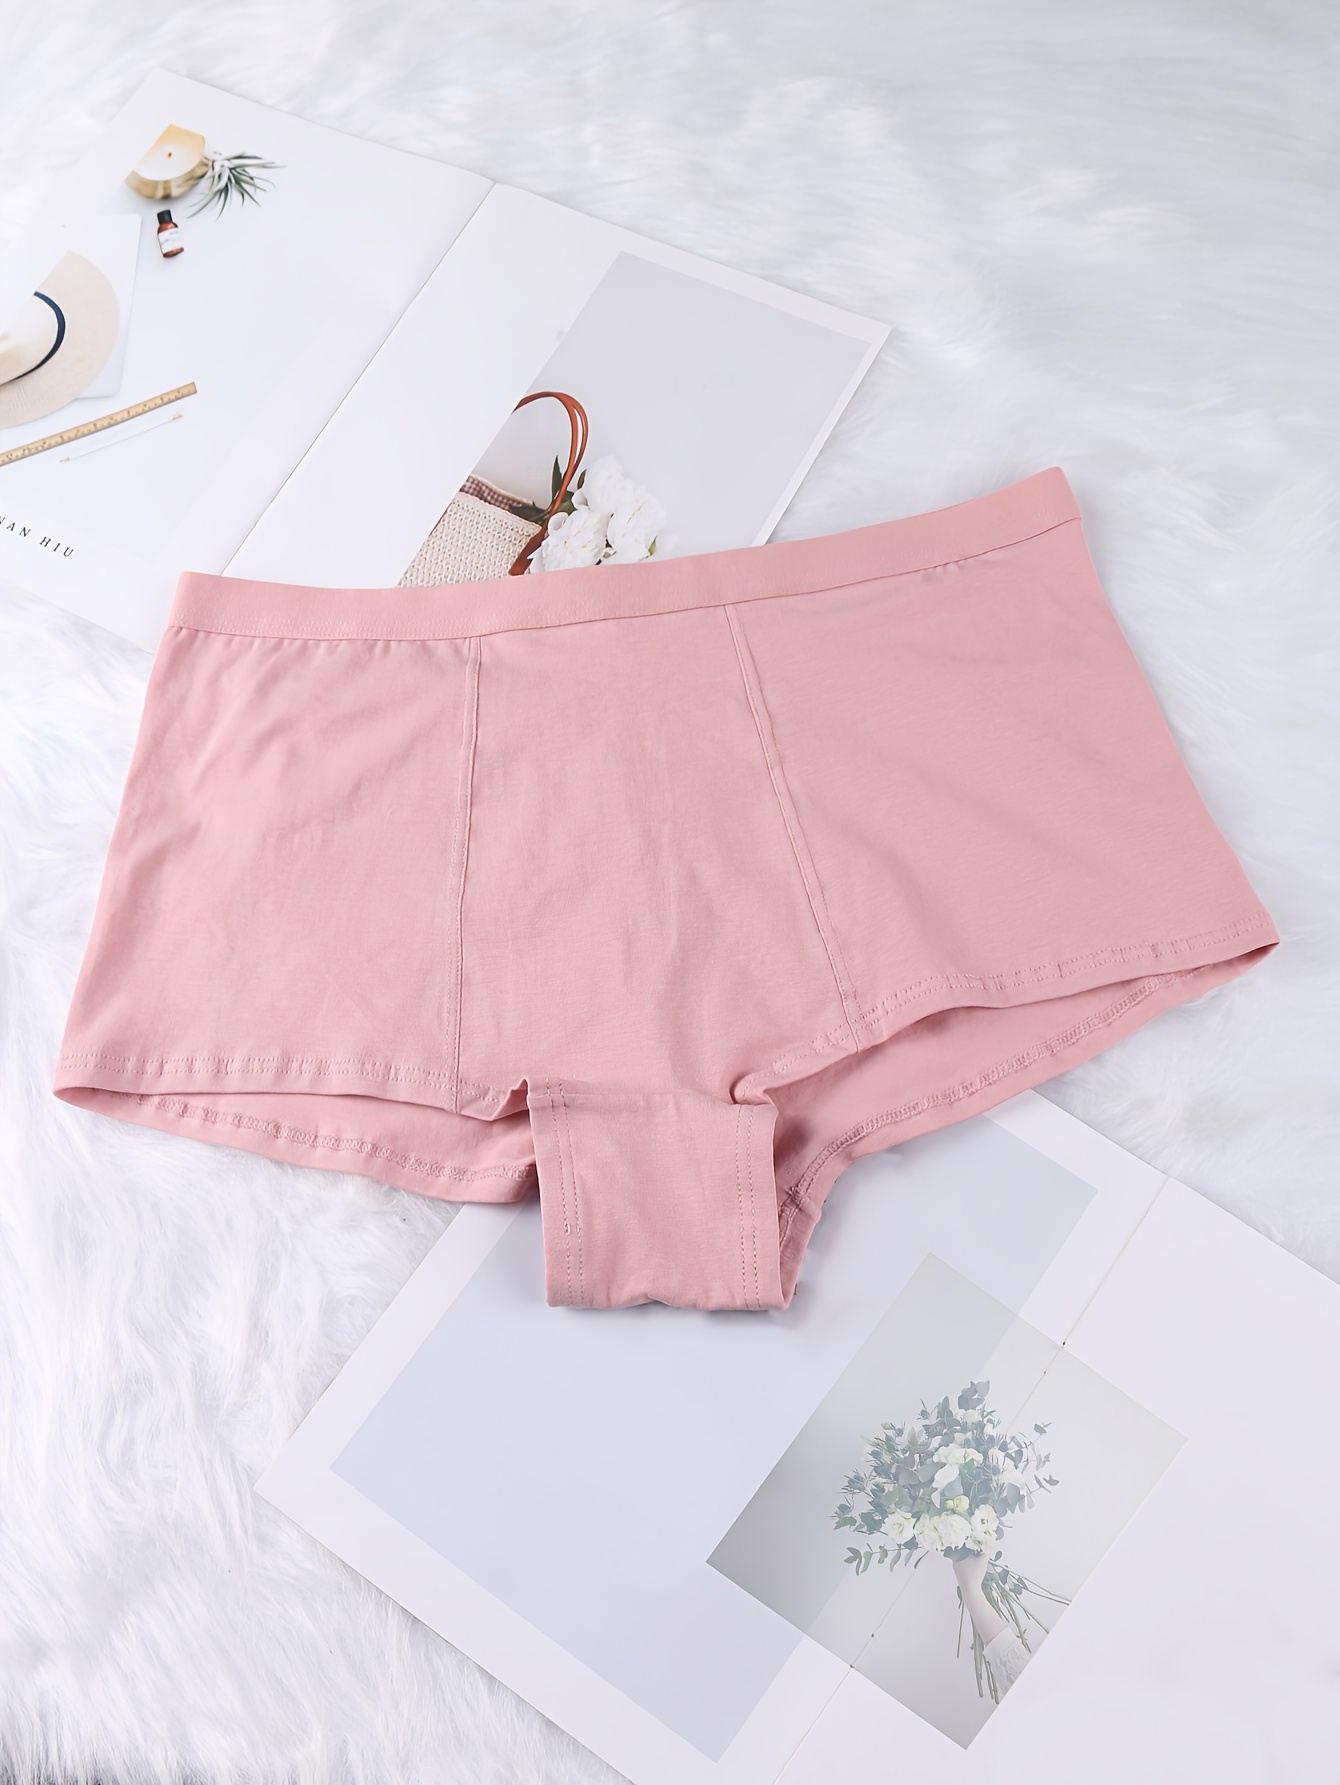 3 Pcs/lot Women's Underpants Soft Cotton Panties Girls Solid